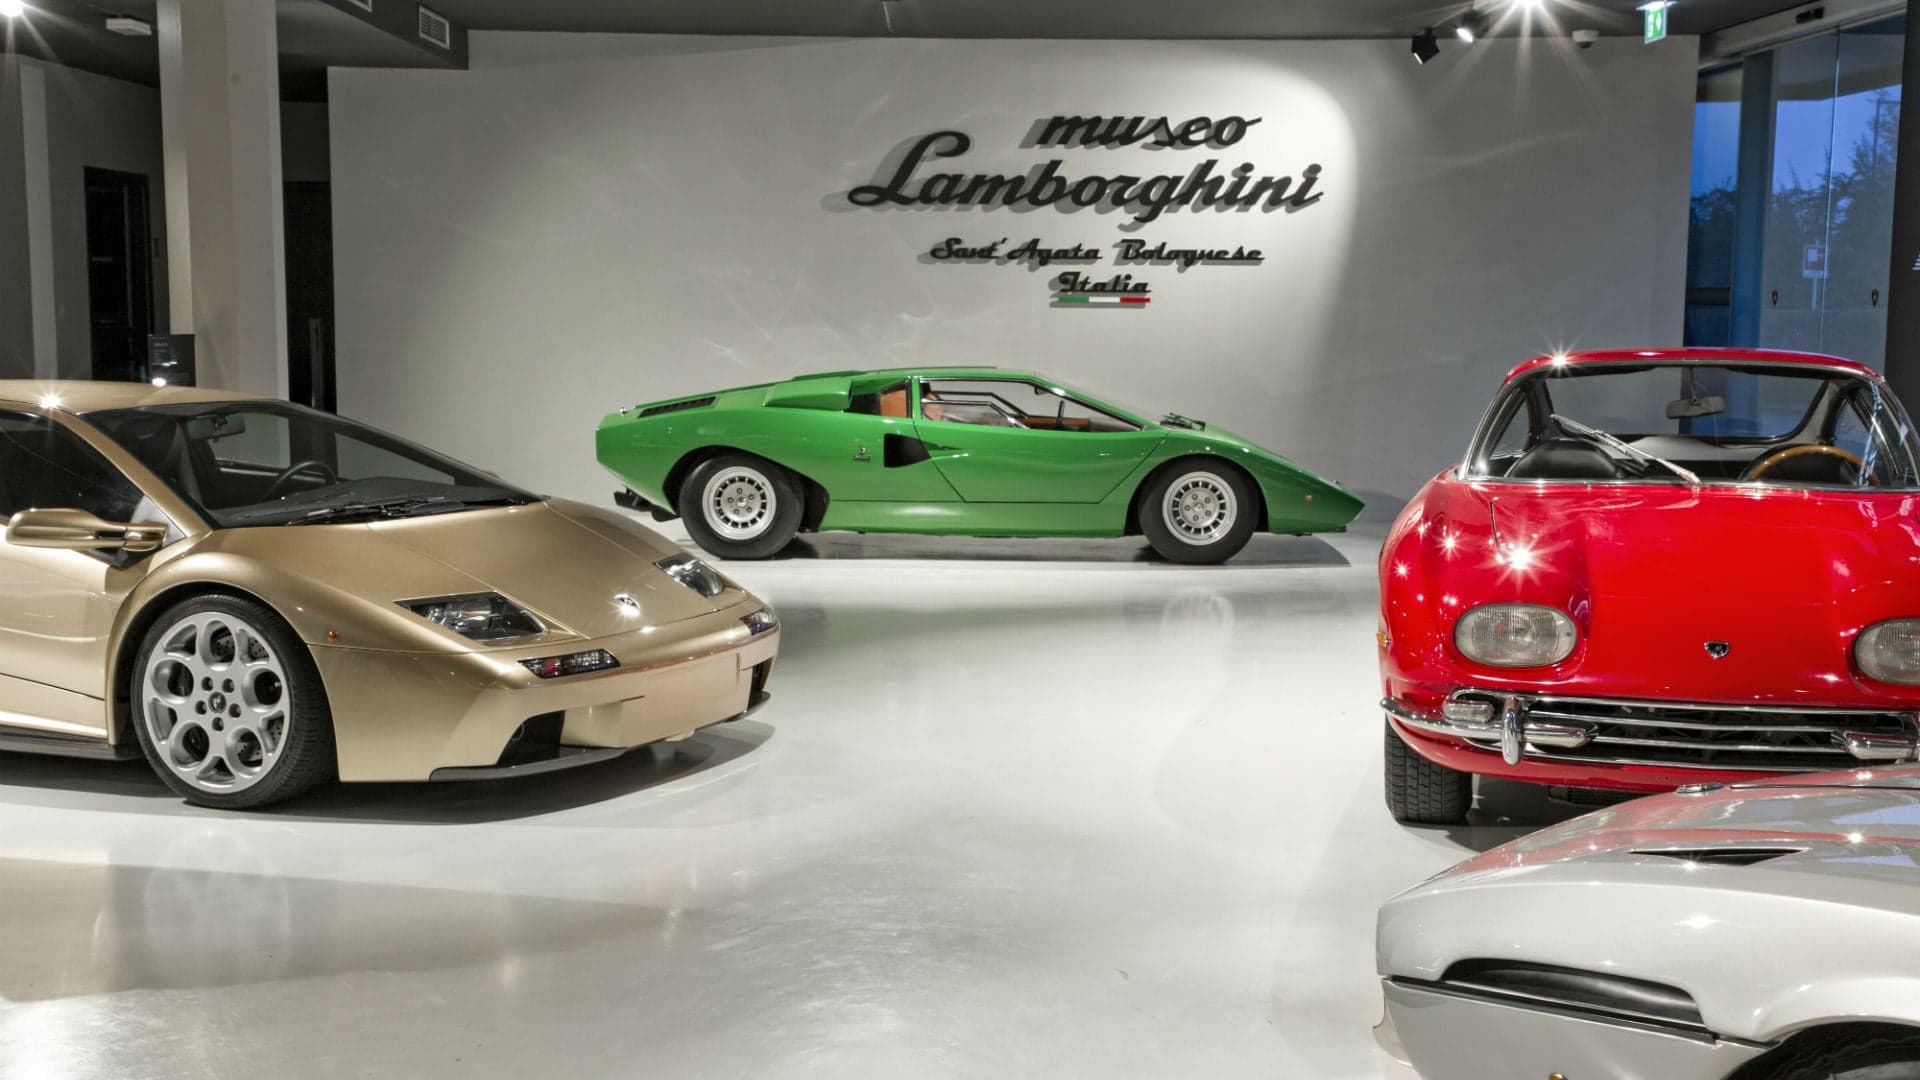 Lamborghini’s Museum in Bologna, Italy Had 100,000 Visitors in 2017